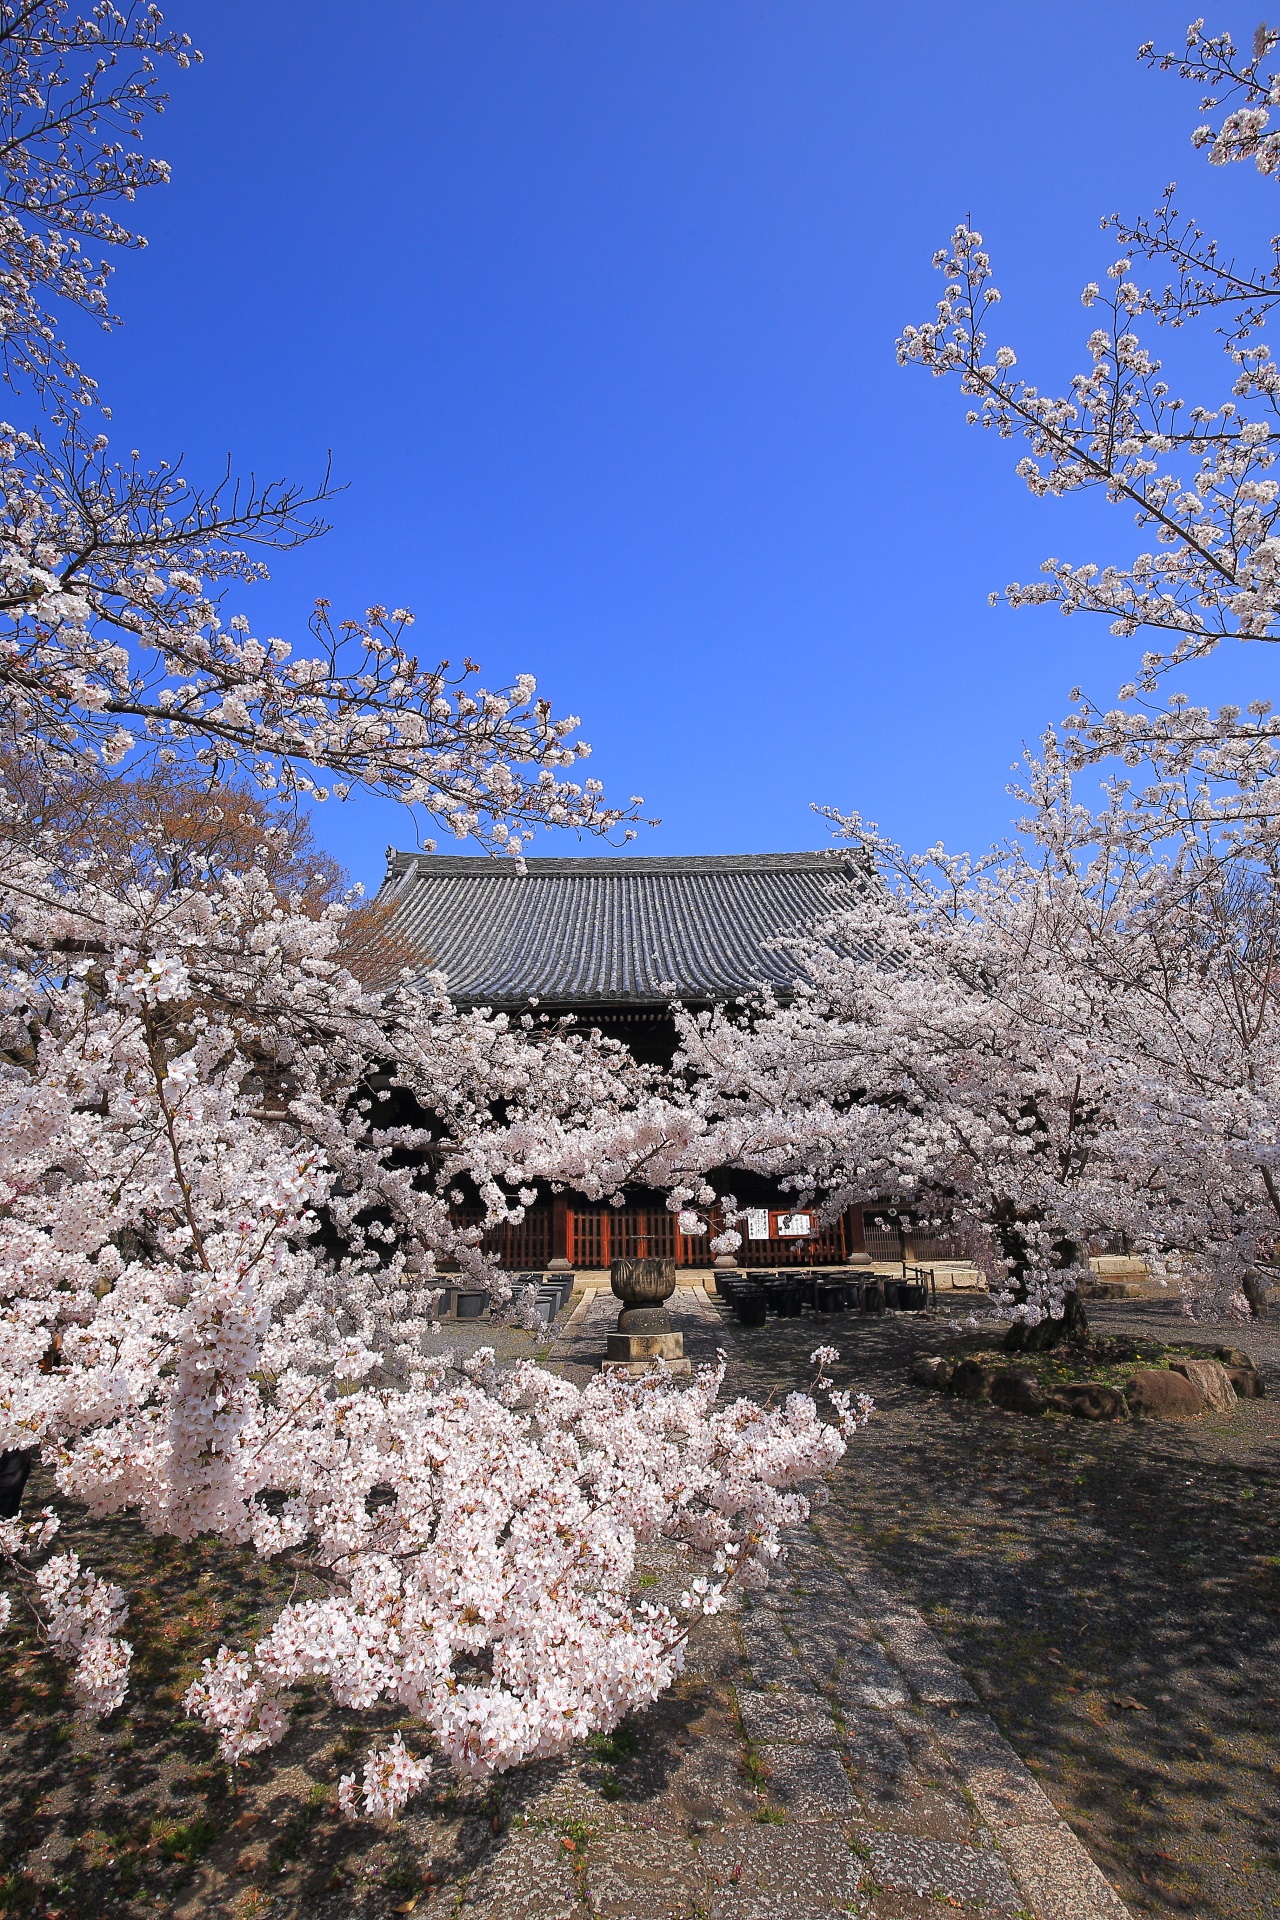 立本寺の最高の青空の下で咲き誇る天晴れな桜